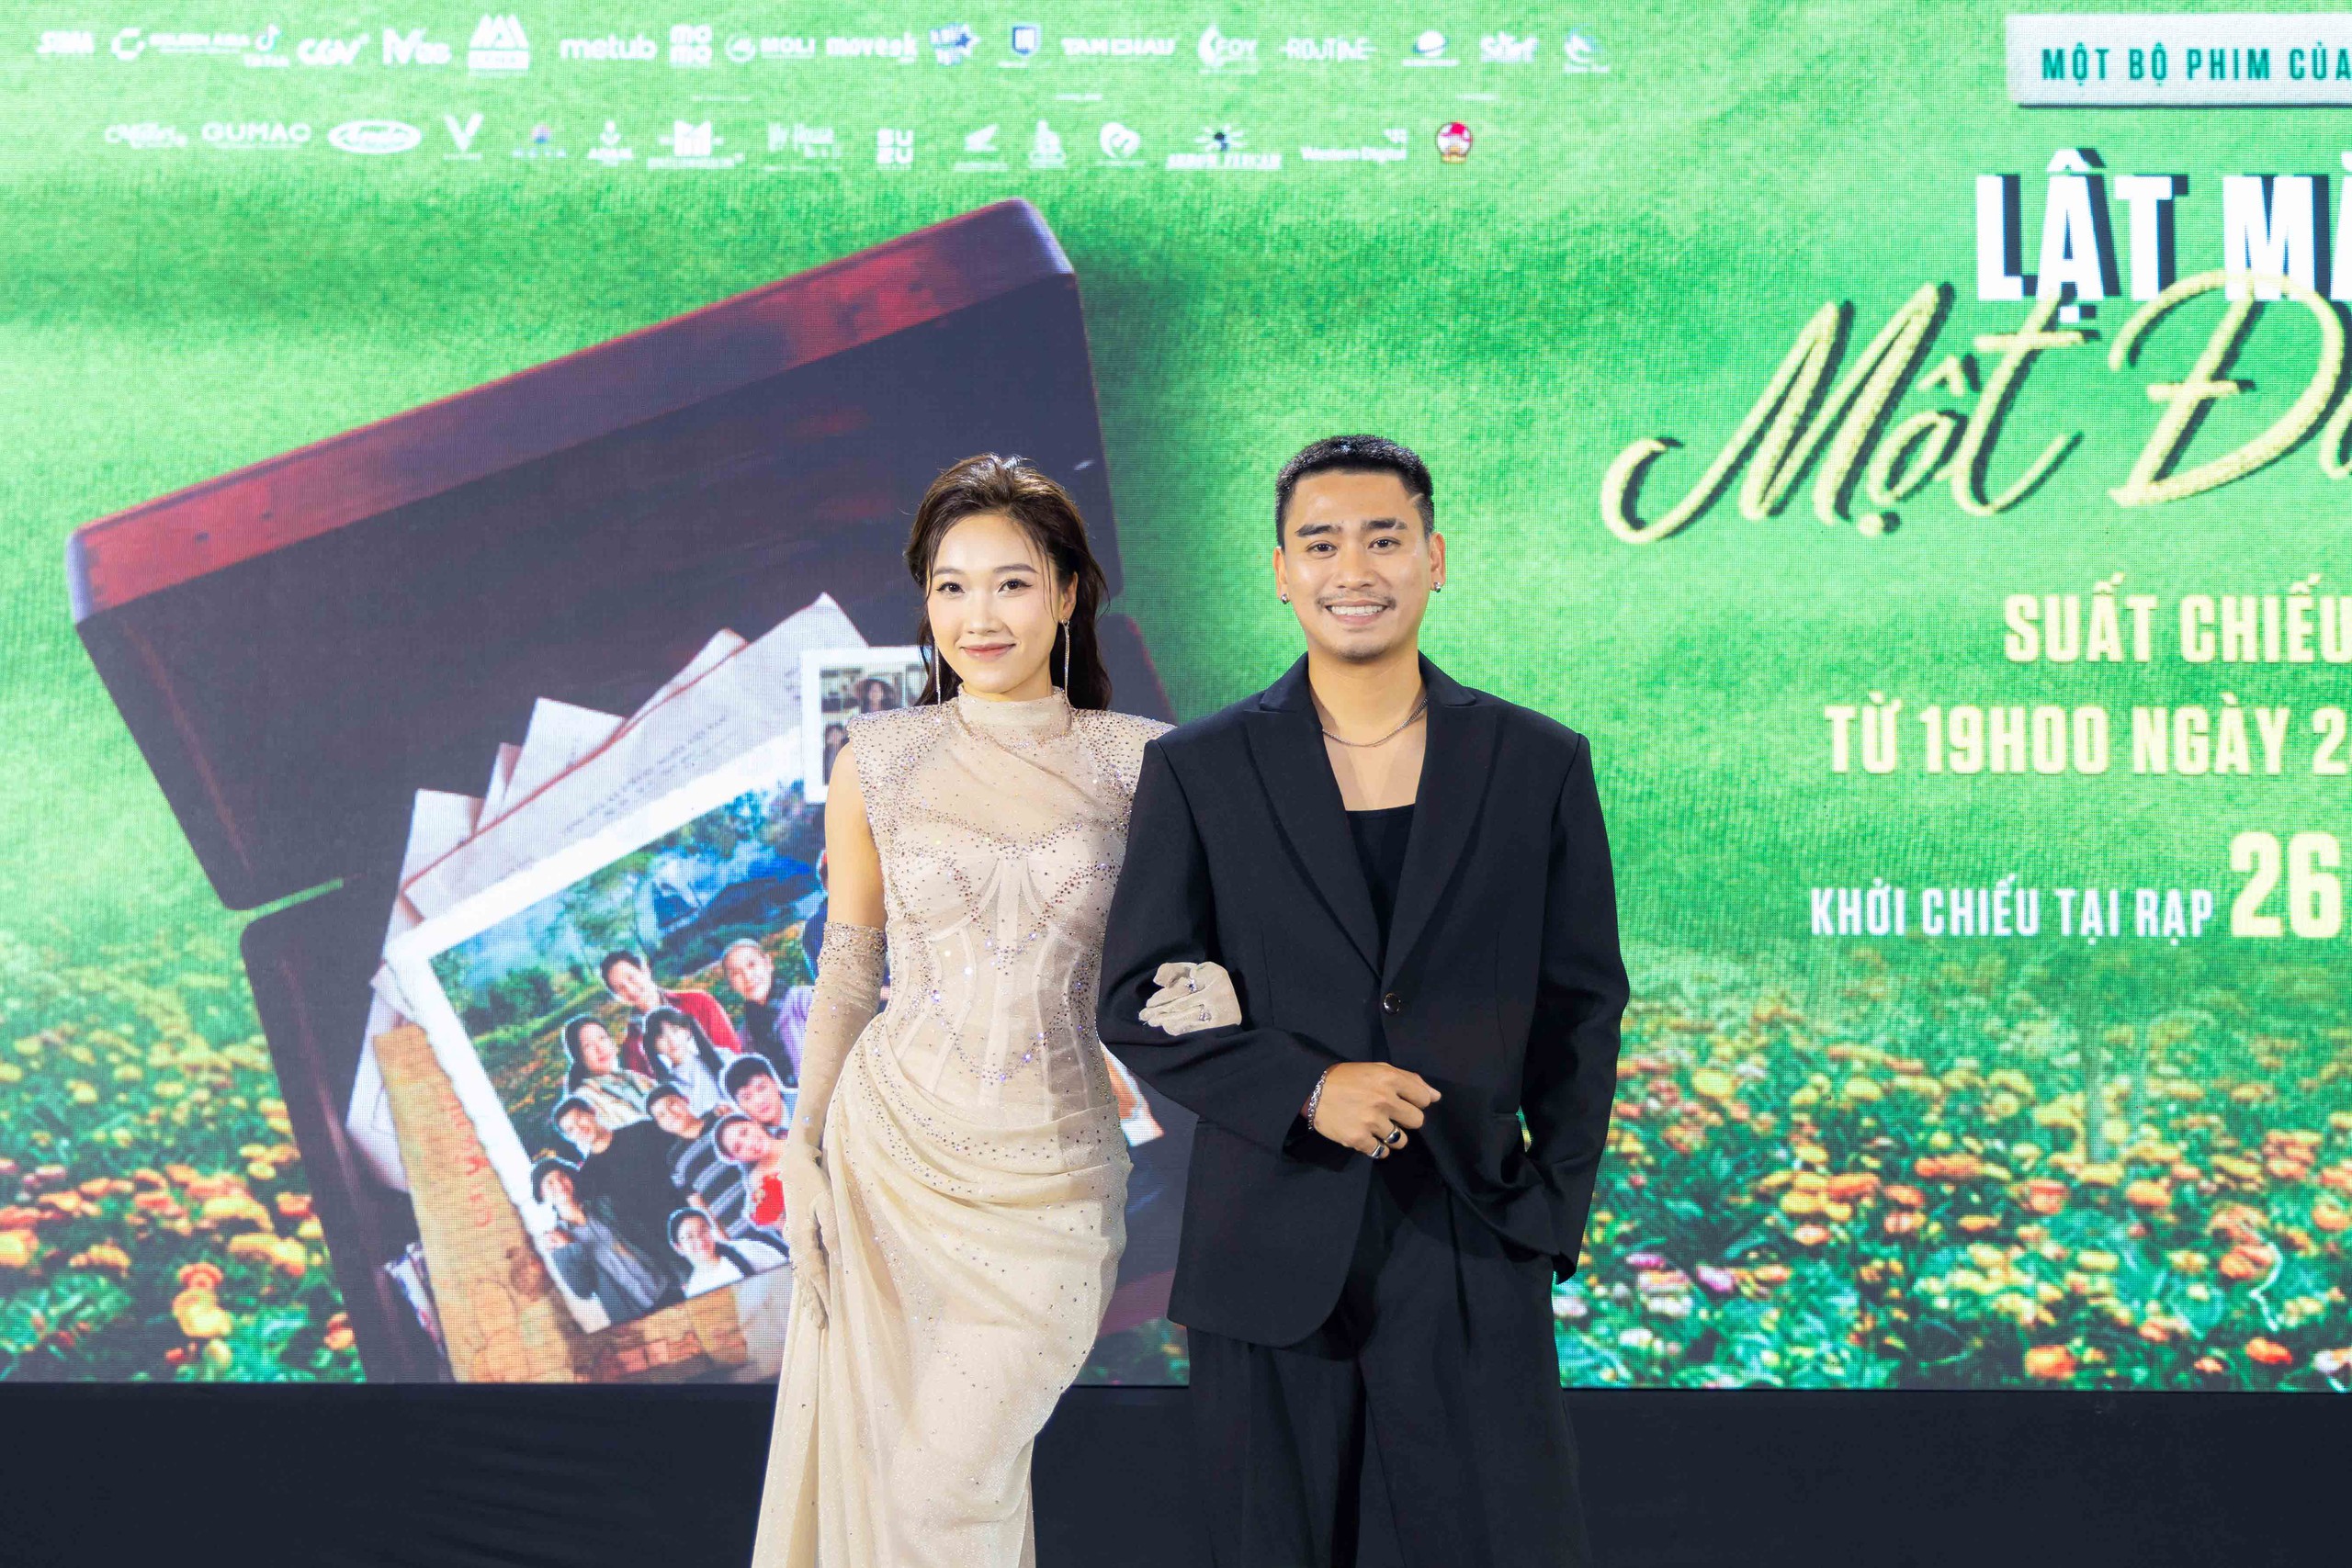 Vợ chồng Sáu Tâm do diễn viên Kim Hải và Lê Thu đóng. Dự án Lật mặt 7: Một điều ước chính thức ra rạp từ ngày 26.4